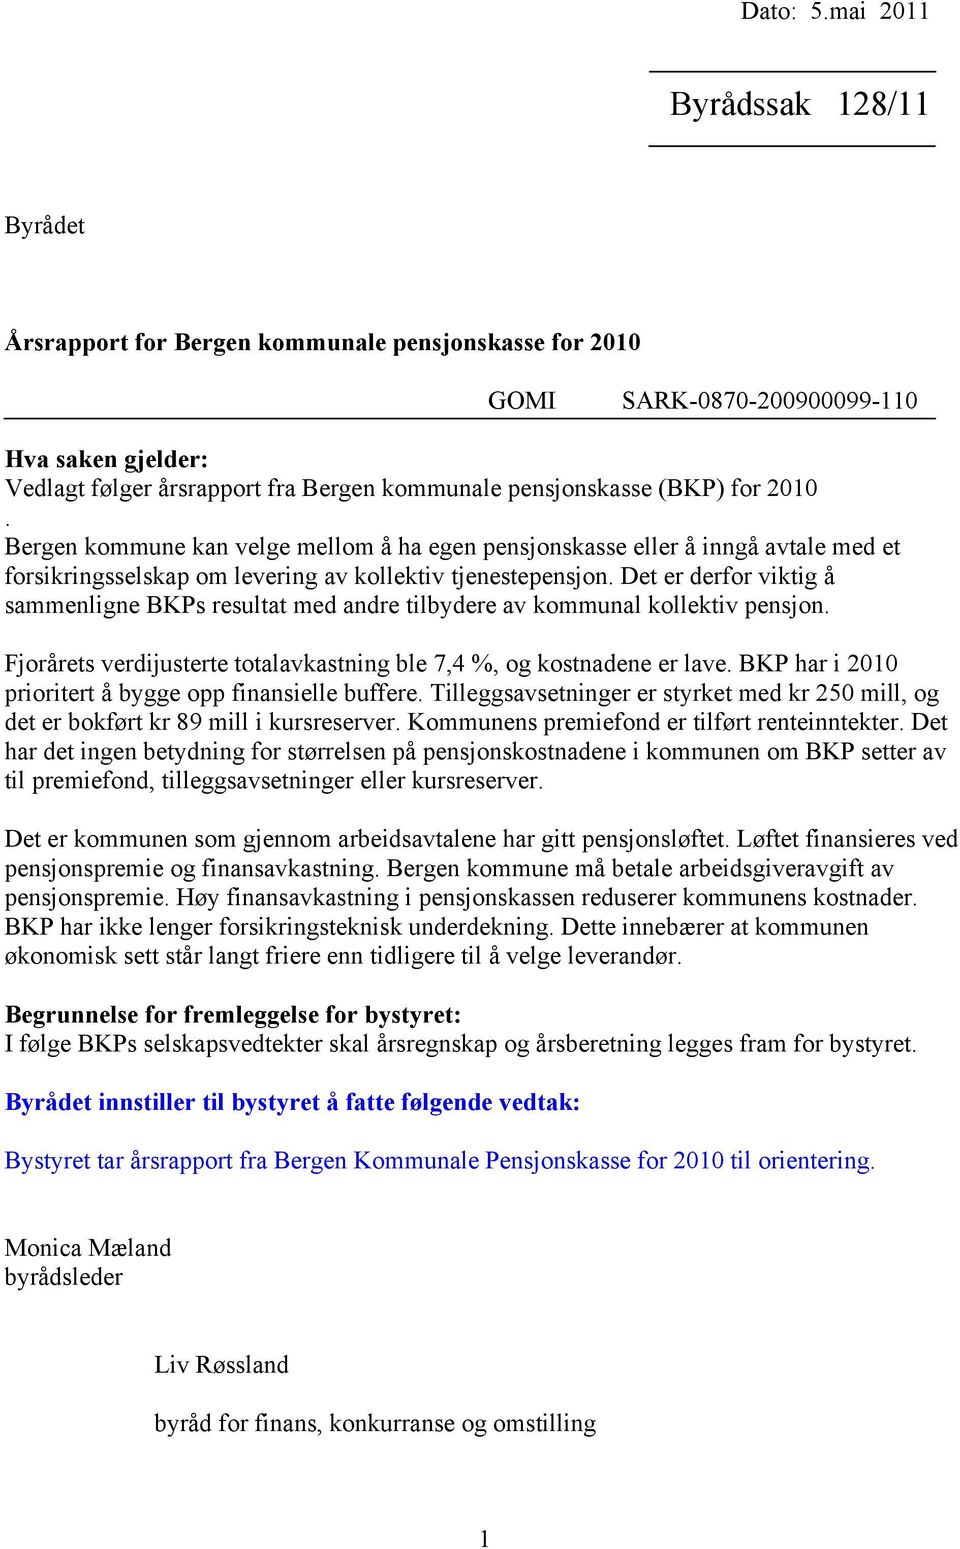 (BKP) for 2010. Bergen kommune kan velge mellom å ha egen pensjonskasse eller å inngå avtale med et forsikringsselskap om levering av kollektiv tjenestepensjon.